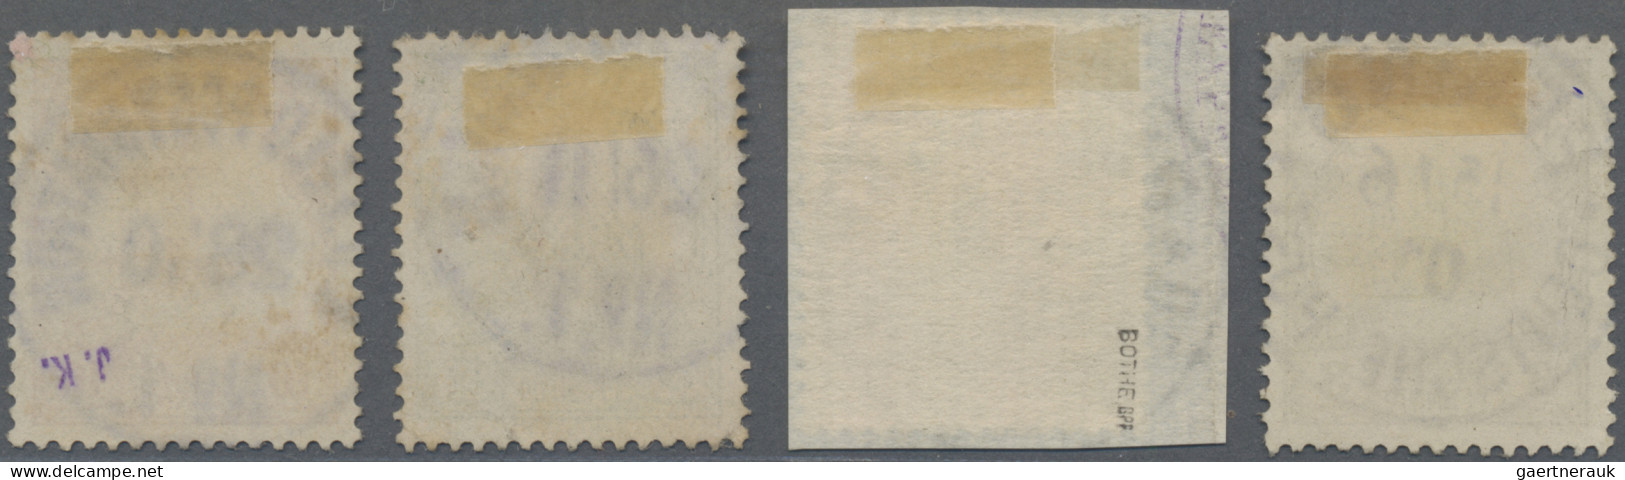 Deutsche Post In China: 1901 "Petschili"-Ausgabe 3 Pf. Mit Stempel "PEKING 15/6 - Deutsche Post In China